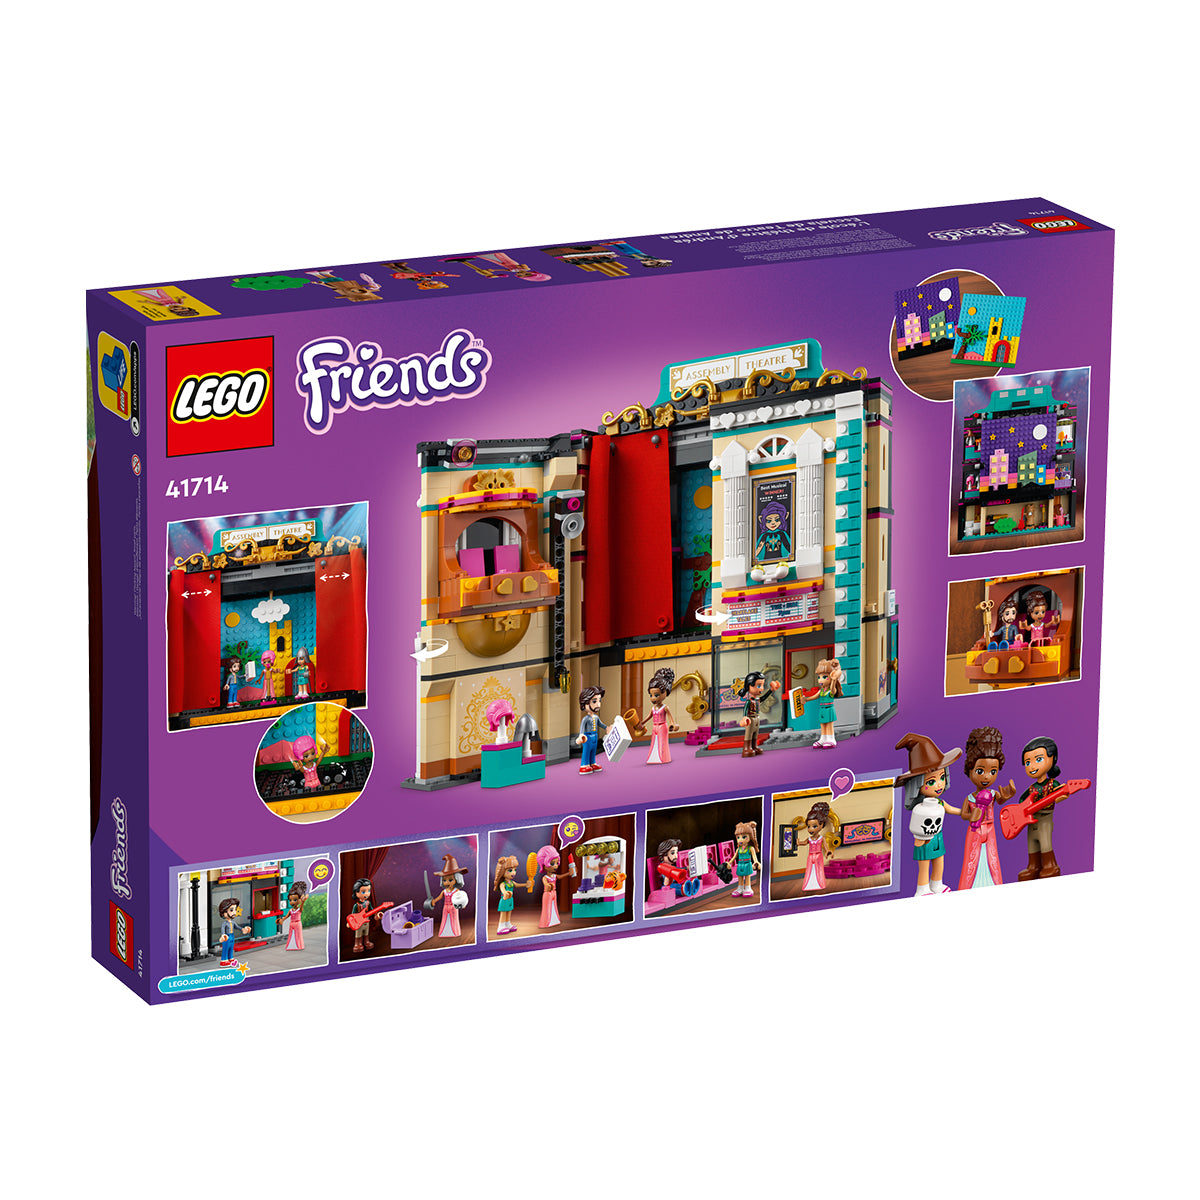 LEGO Friends - Andrea's Theater School 41714